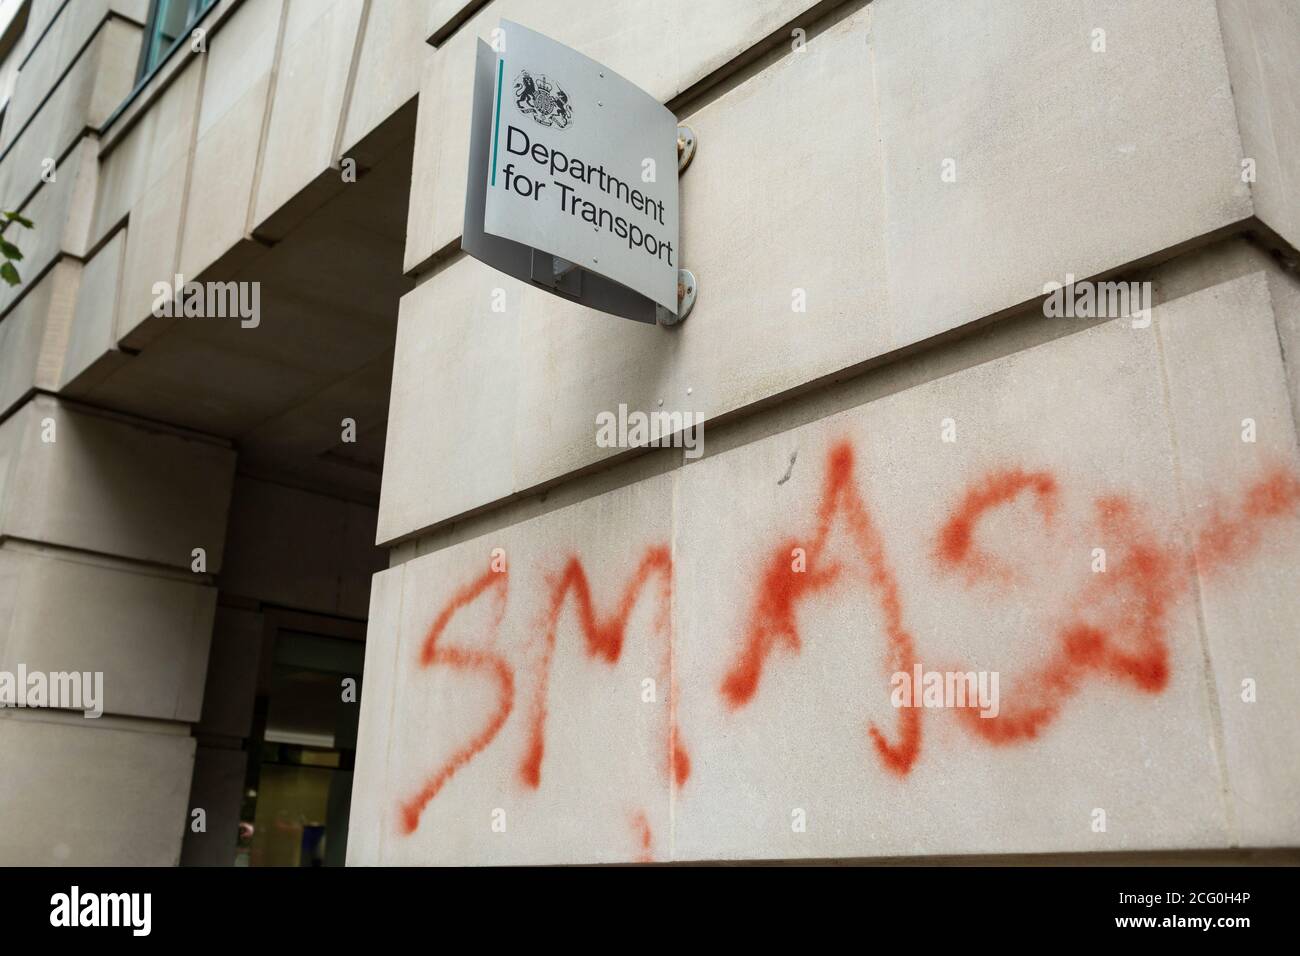 Secuelas de la manifestación de la rebelión HS2 mostrando graffiti, Departamento de Transporte, Londres, 4 de septiembre de 2020 Foto de stock